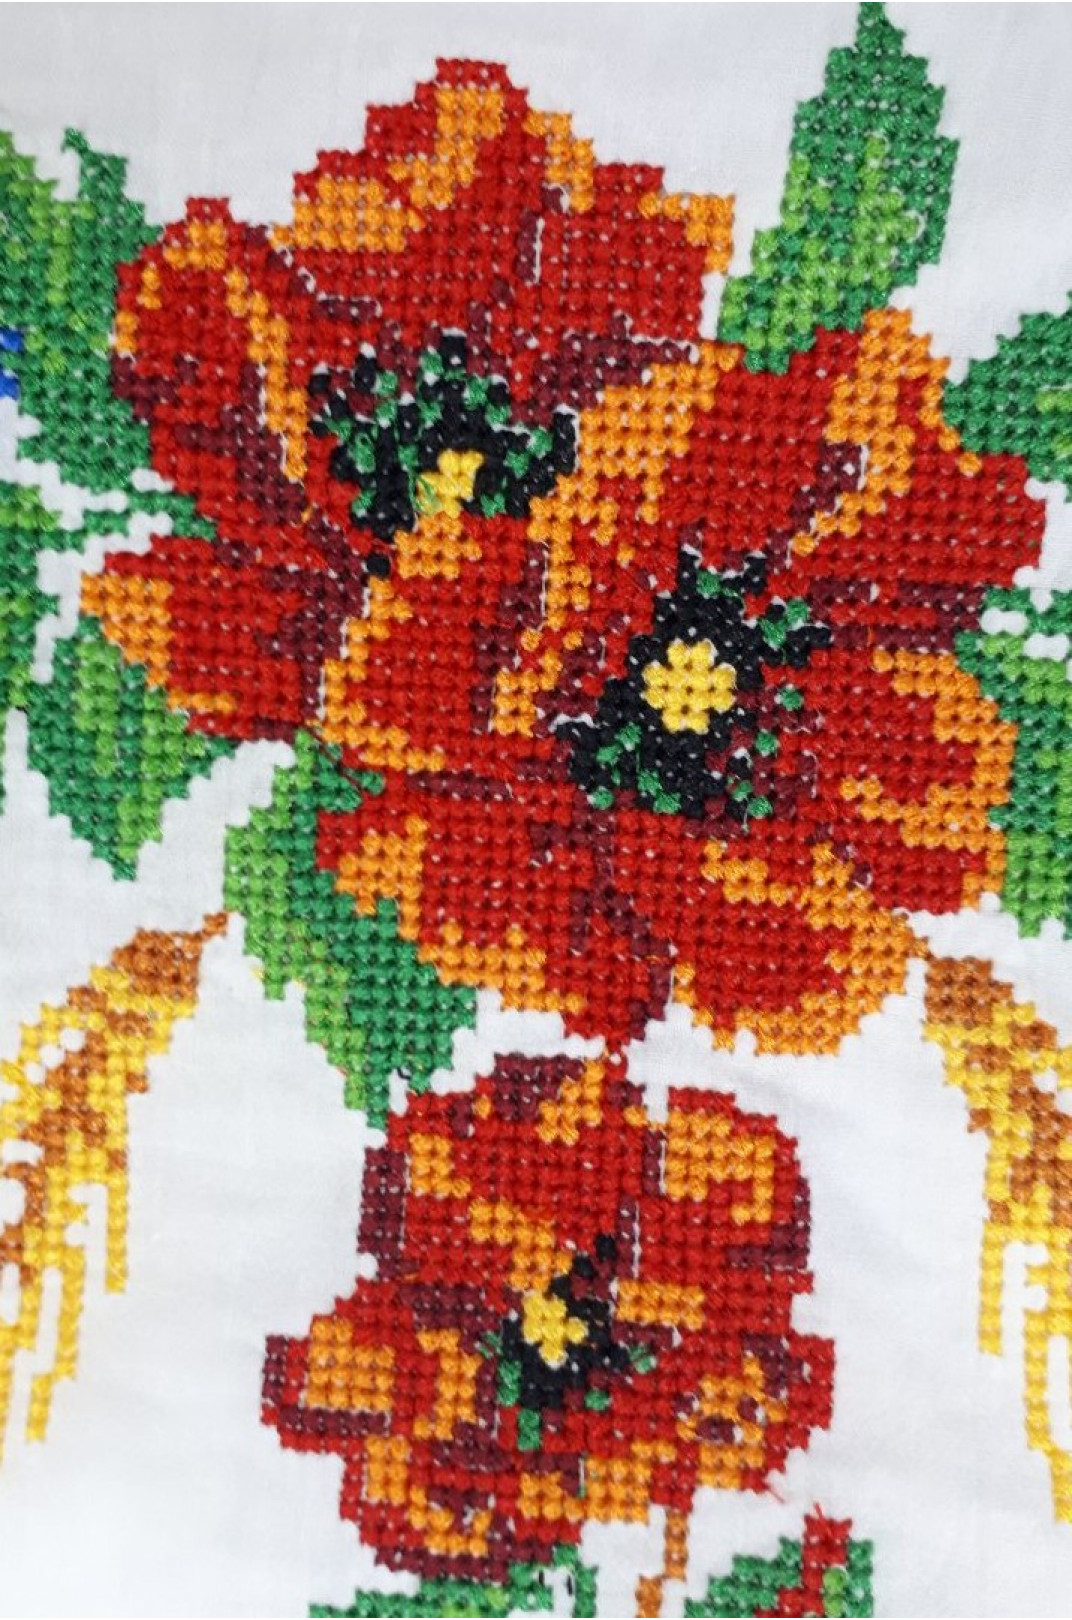 Вышиванка-блуза с цветочным орнаментом